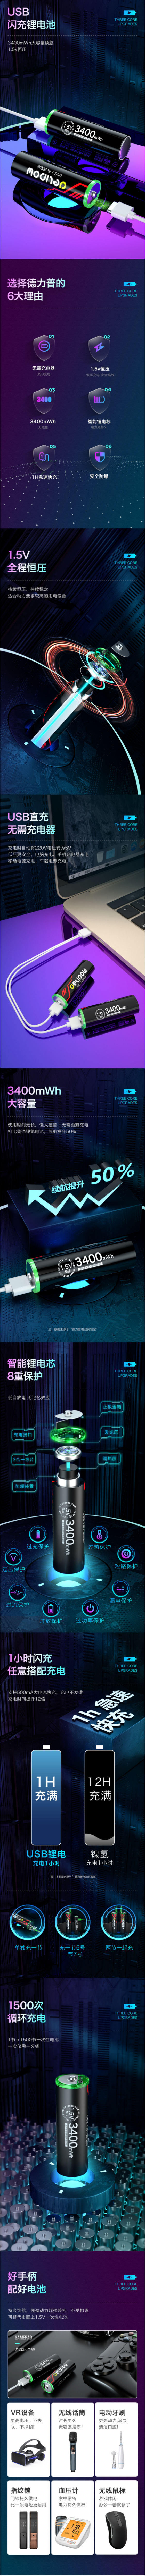 德力普充电电池5号锂电USB快充五号七号AAA通用大容量可充7号1.5V-tmall.com天猫.png